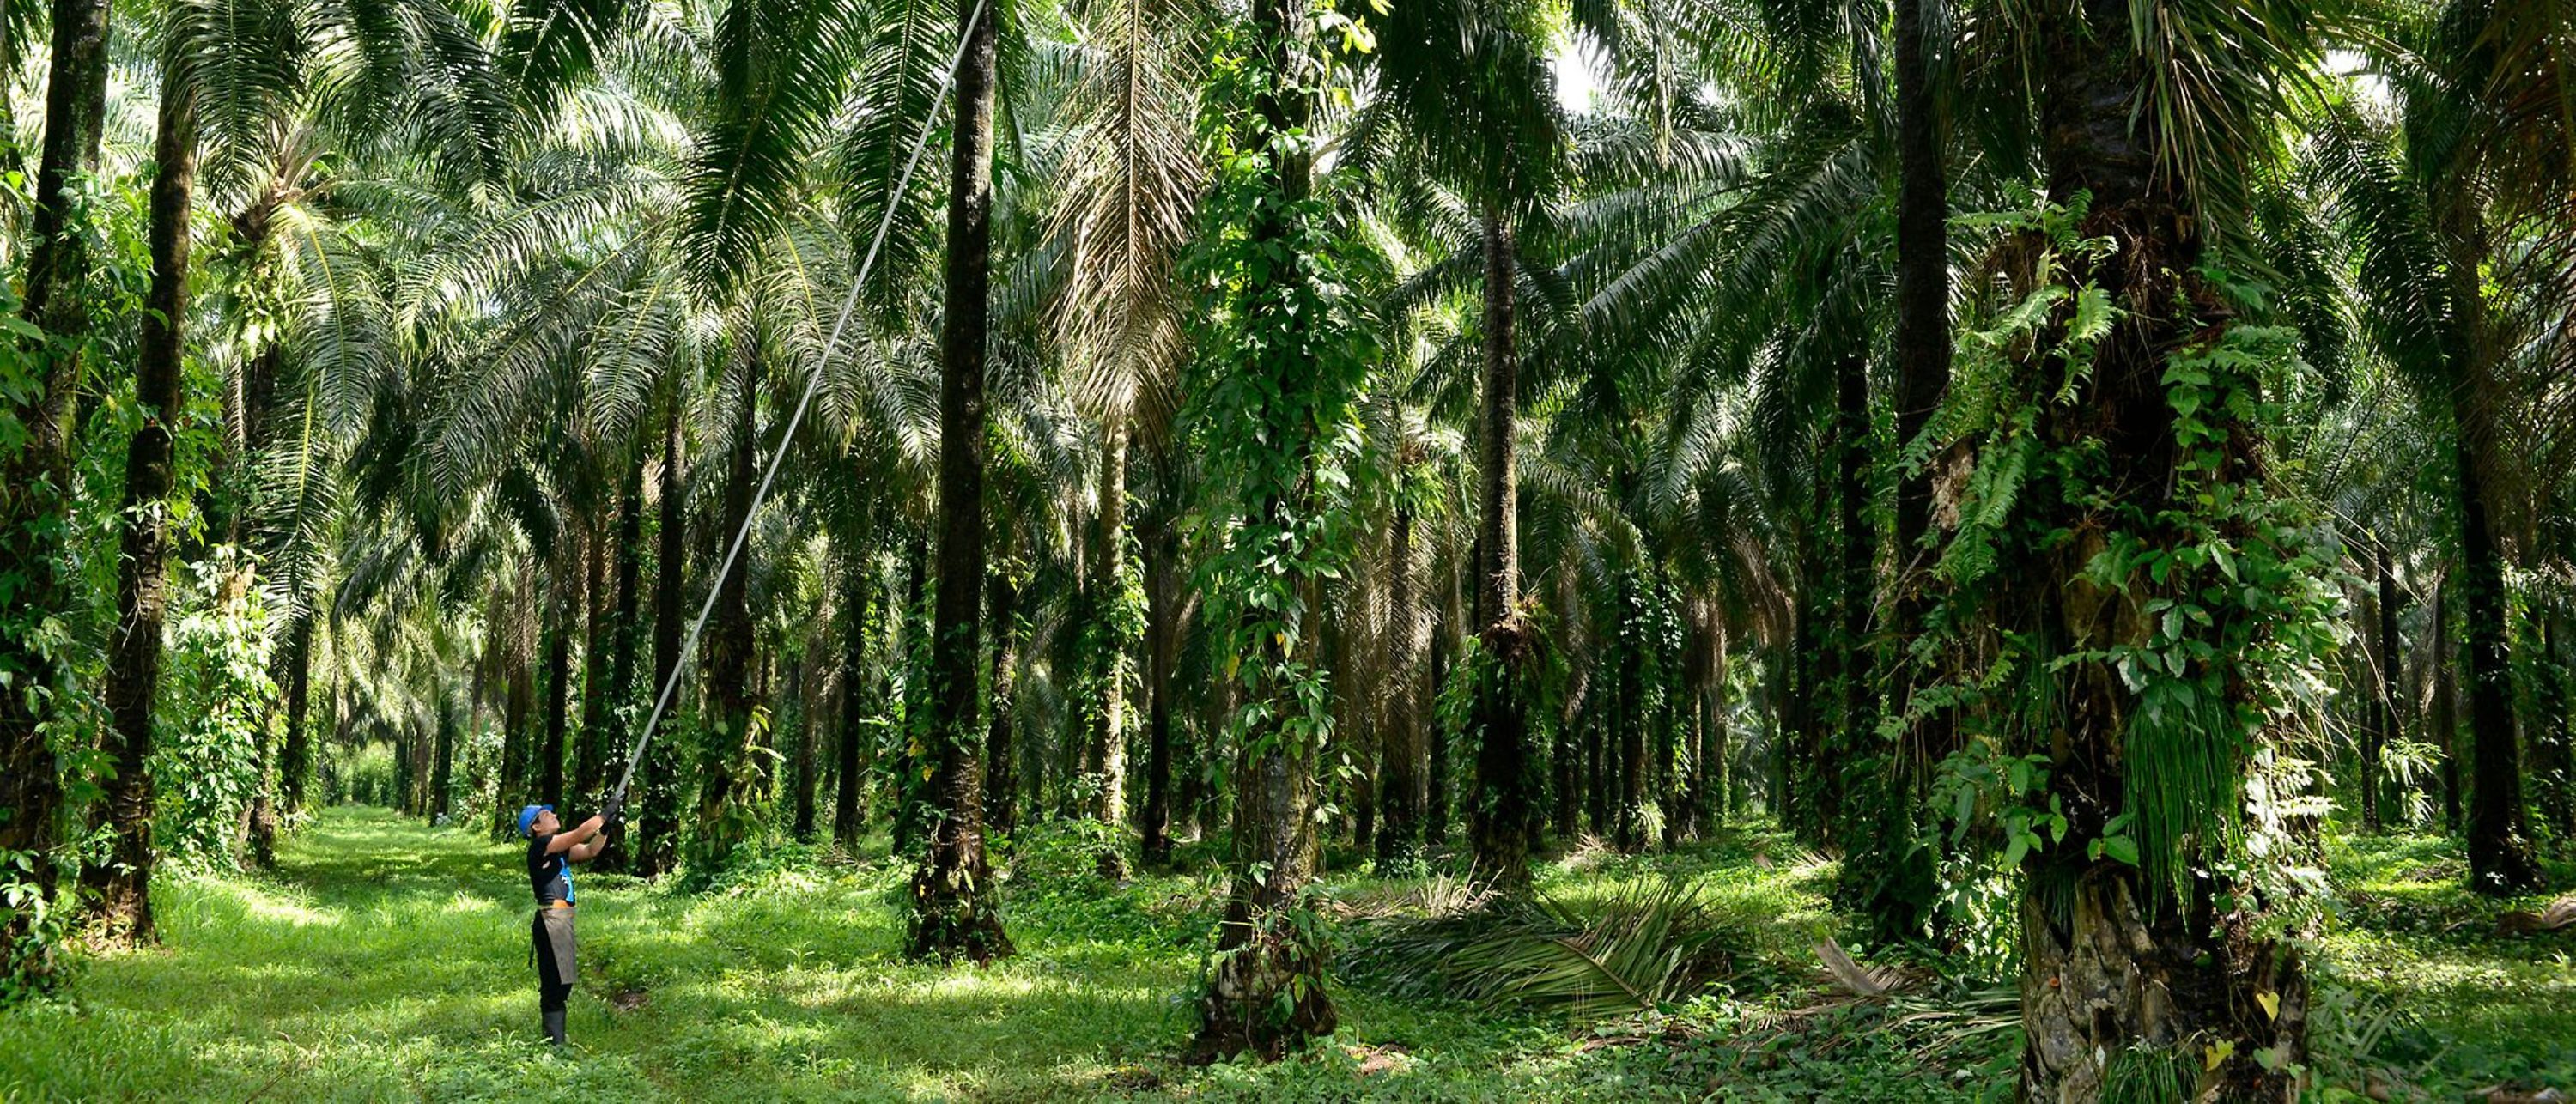 Homem a colher frutos da palmeira numa floresta de palmeiras